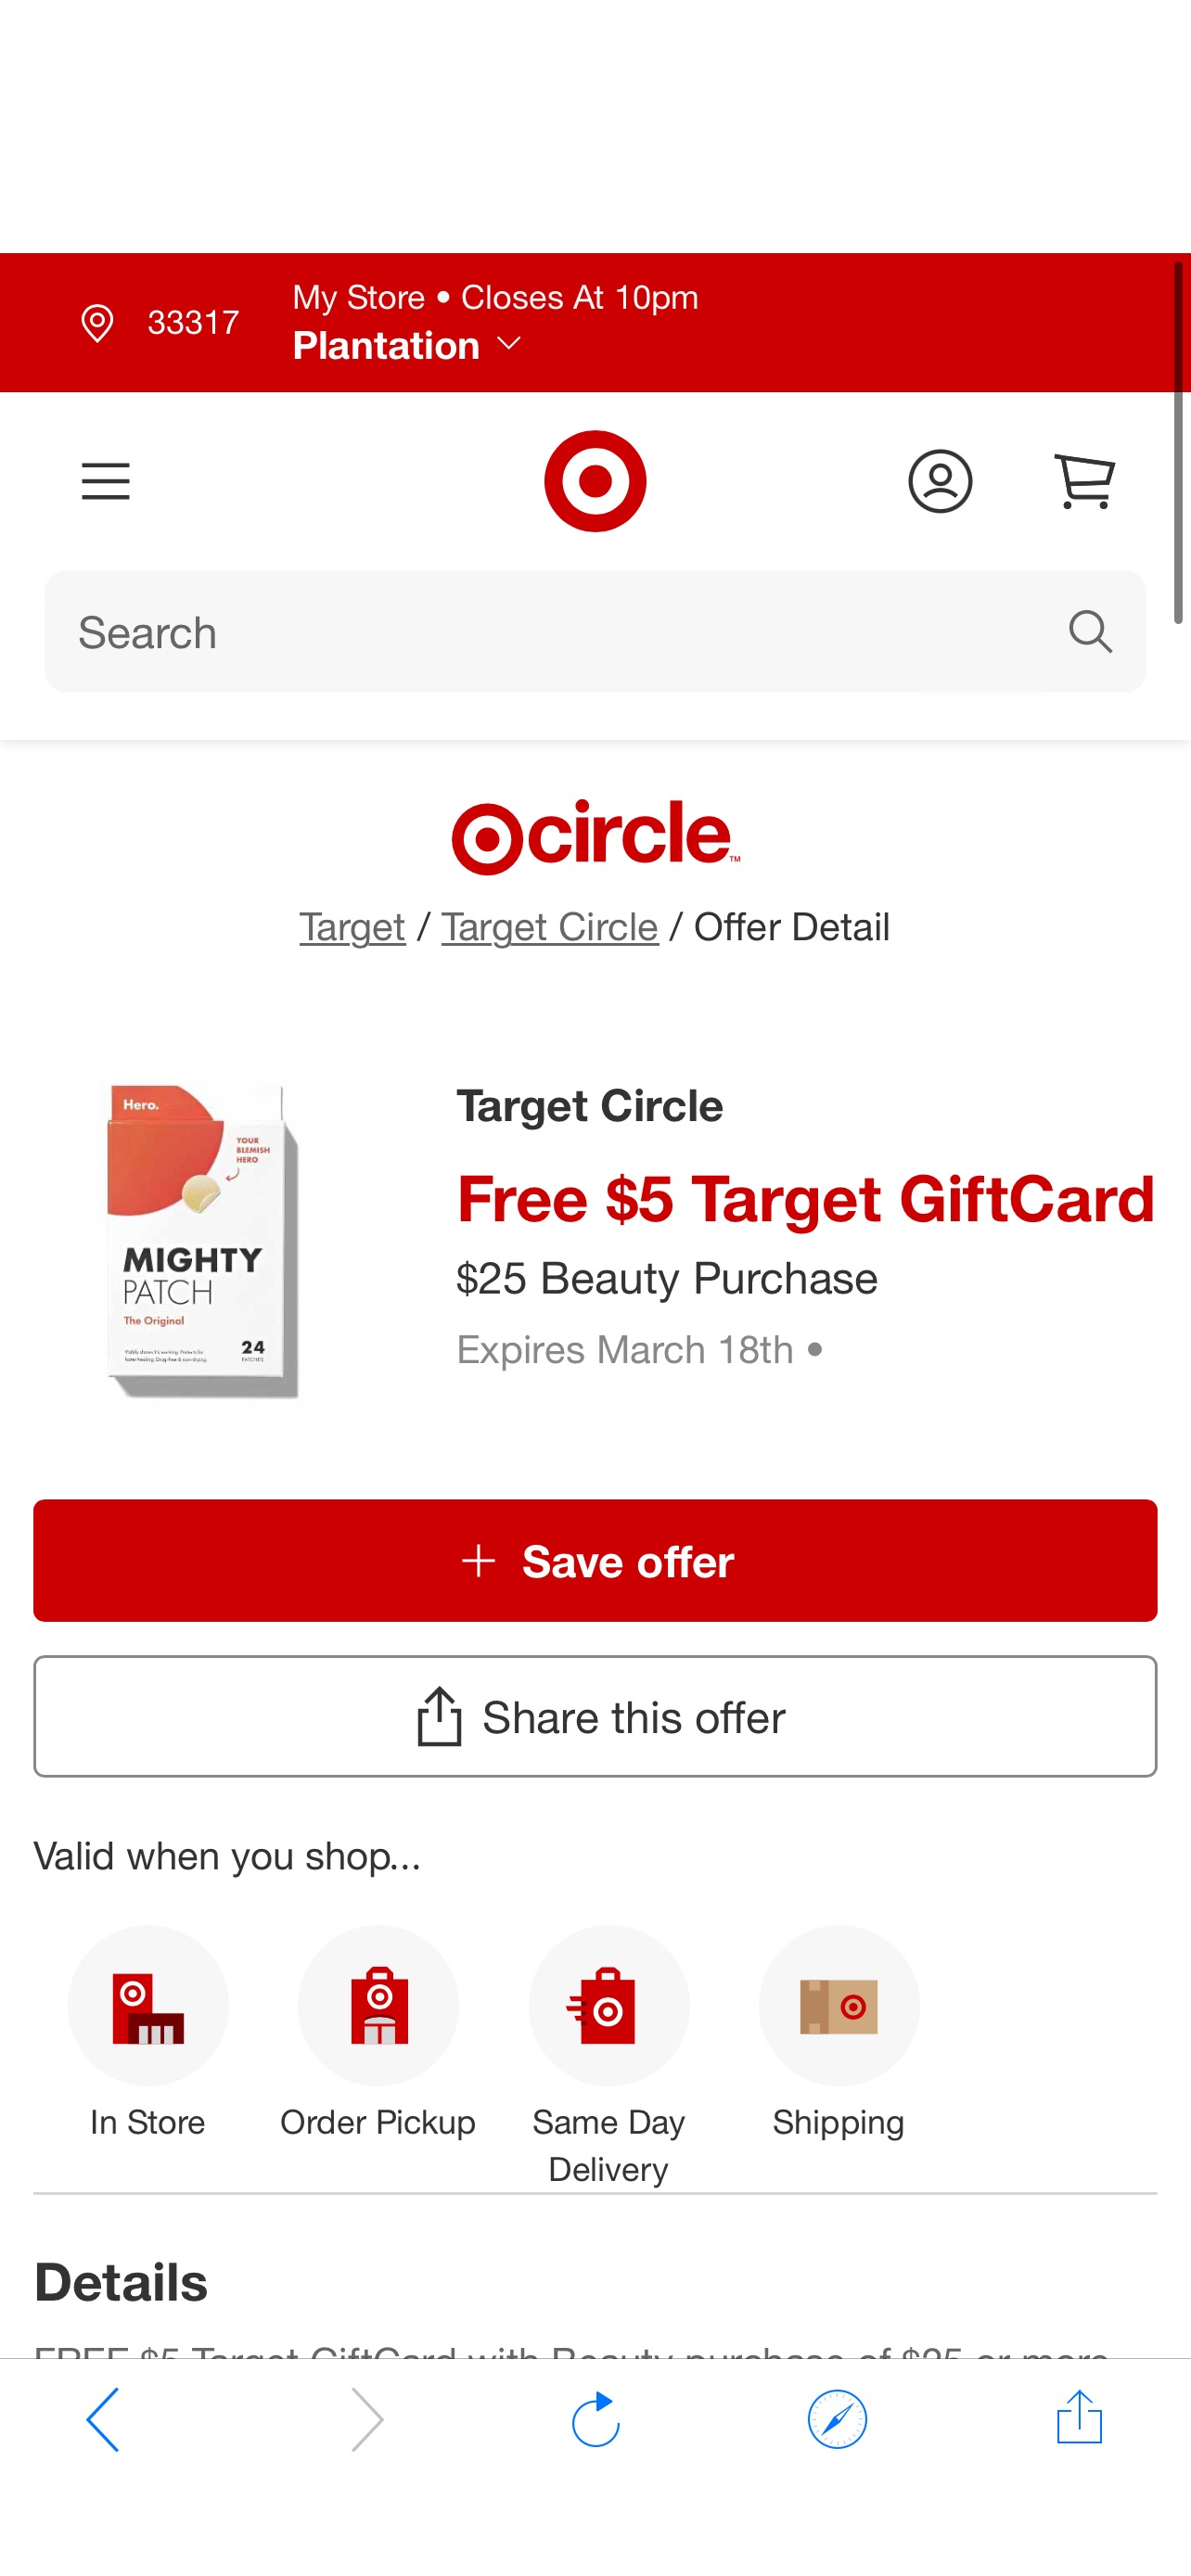 Target Circle Offer Detail